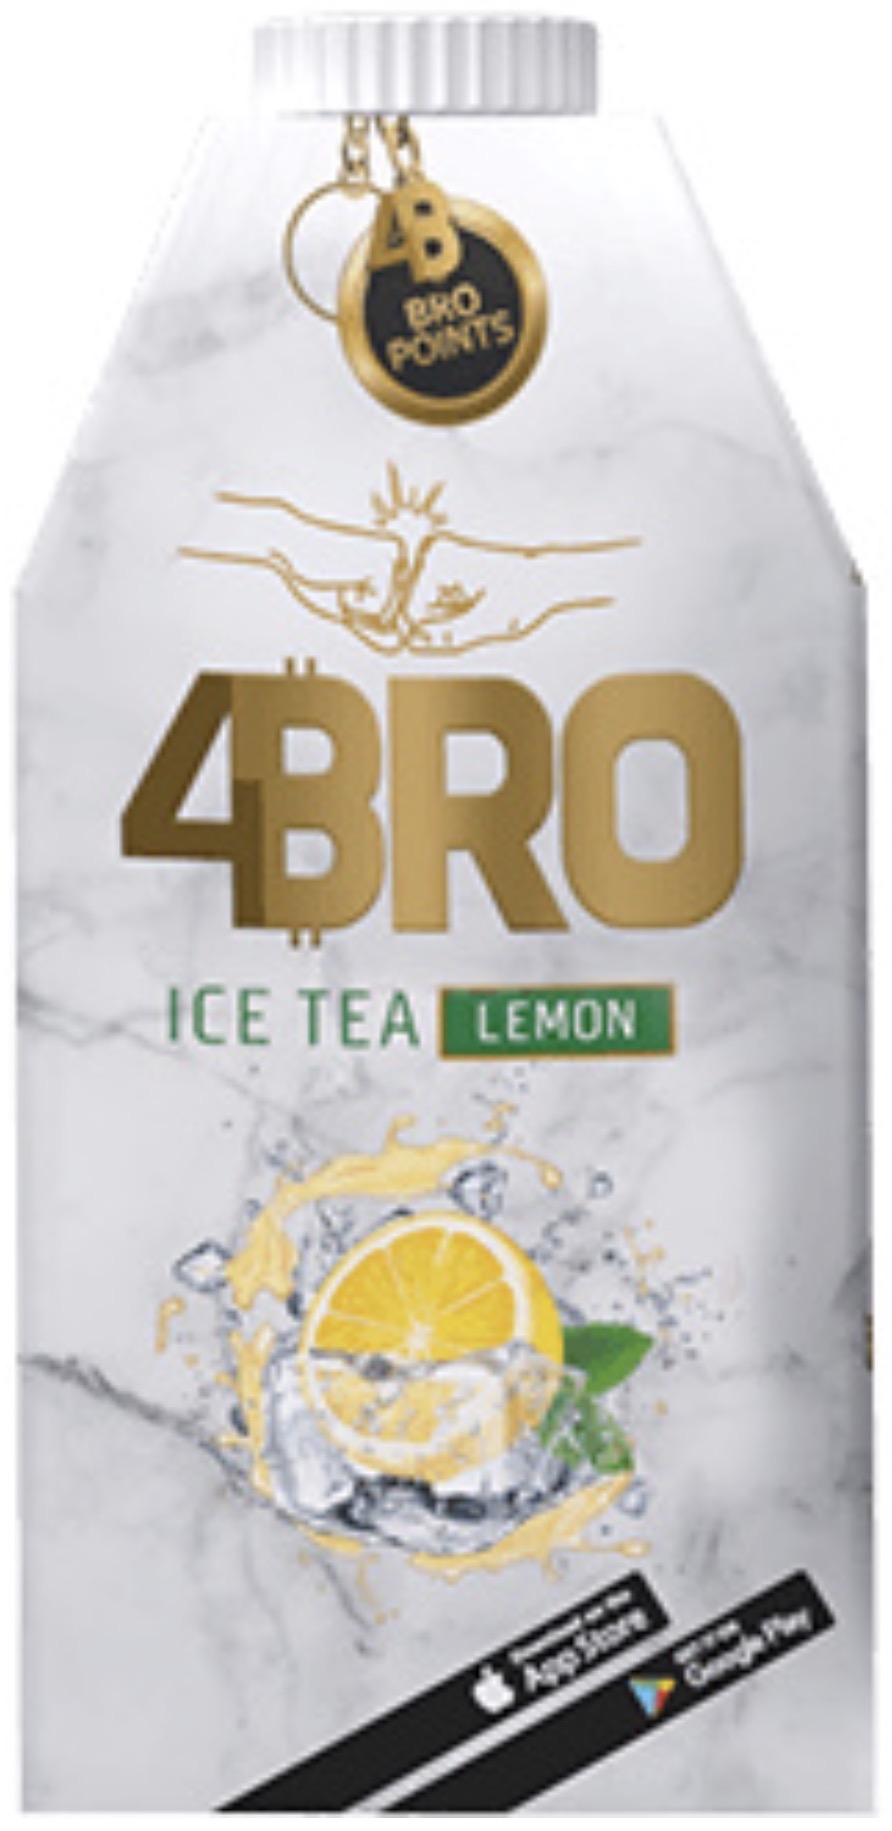 4Bro - Ice Tea Lemon 0,5L